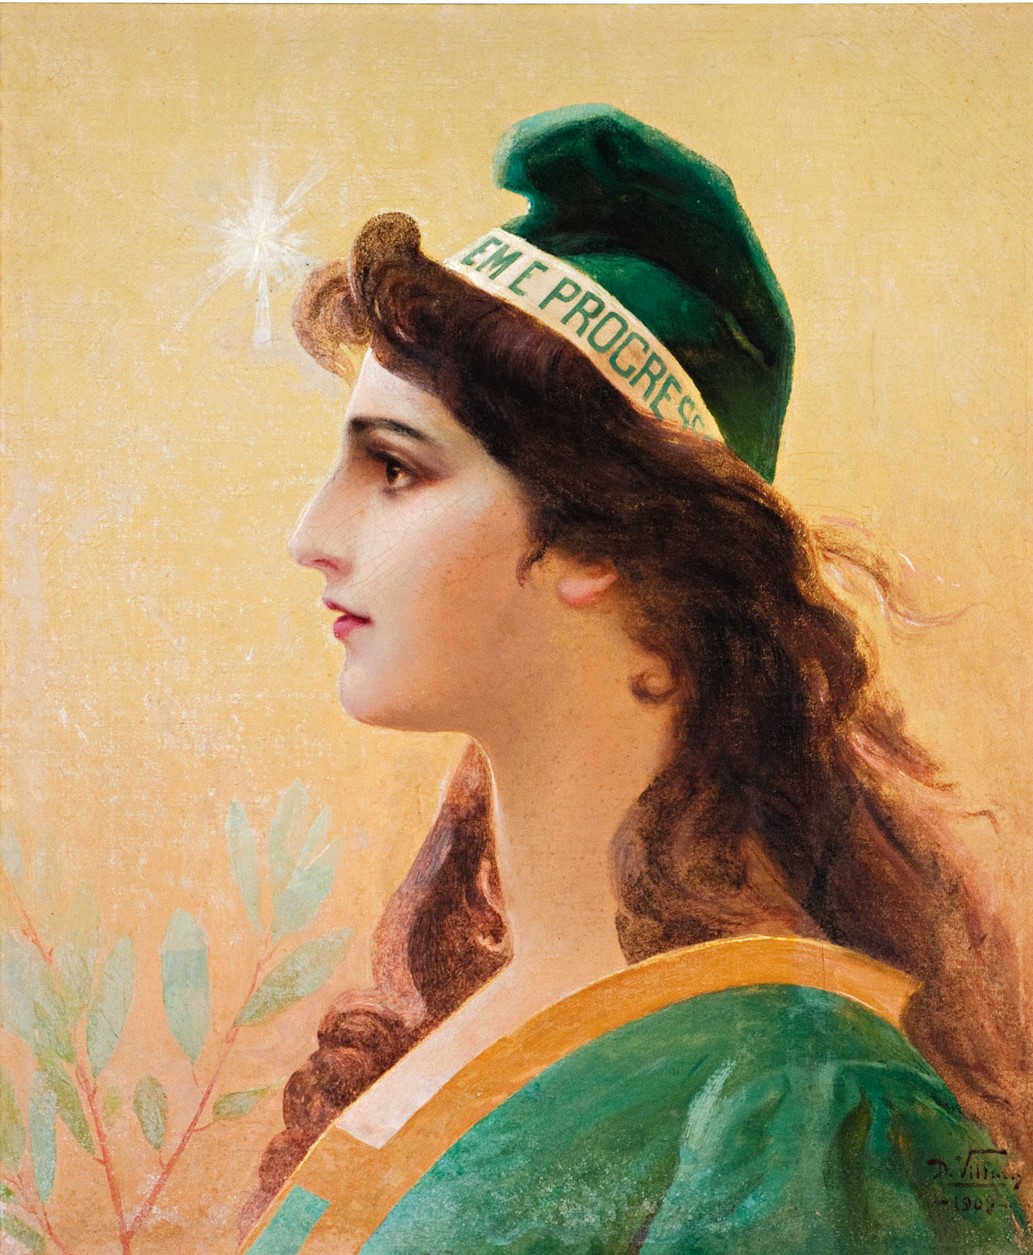 Mulher representando a república pintada, mulher de pele branca de perfil com o nariz apontado para a esquerda, veste roupas e chapéu. Faixa escrito ordem e progresso entre chapéu e couro cabeludo